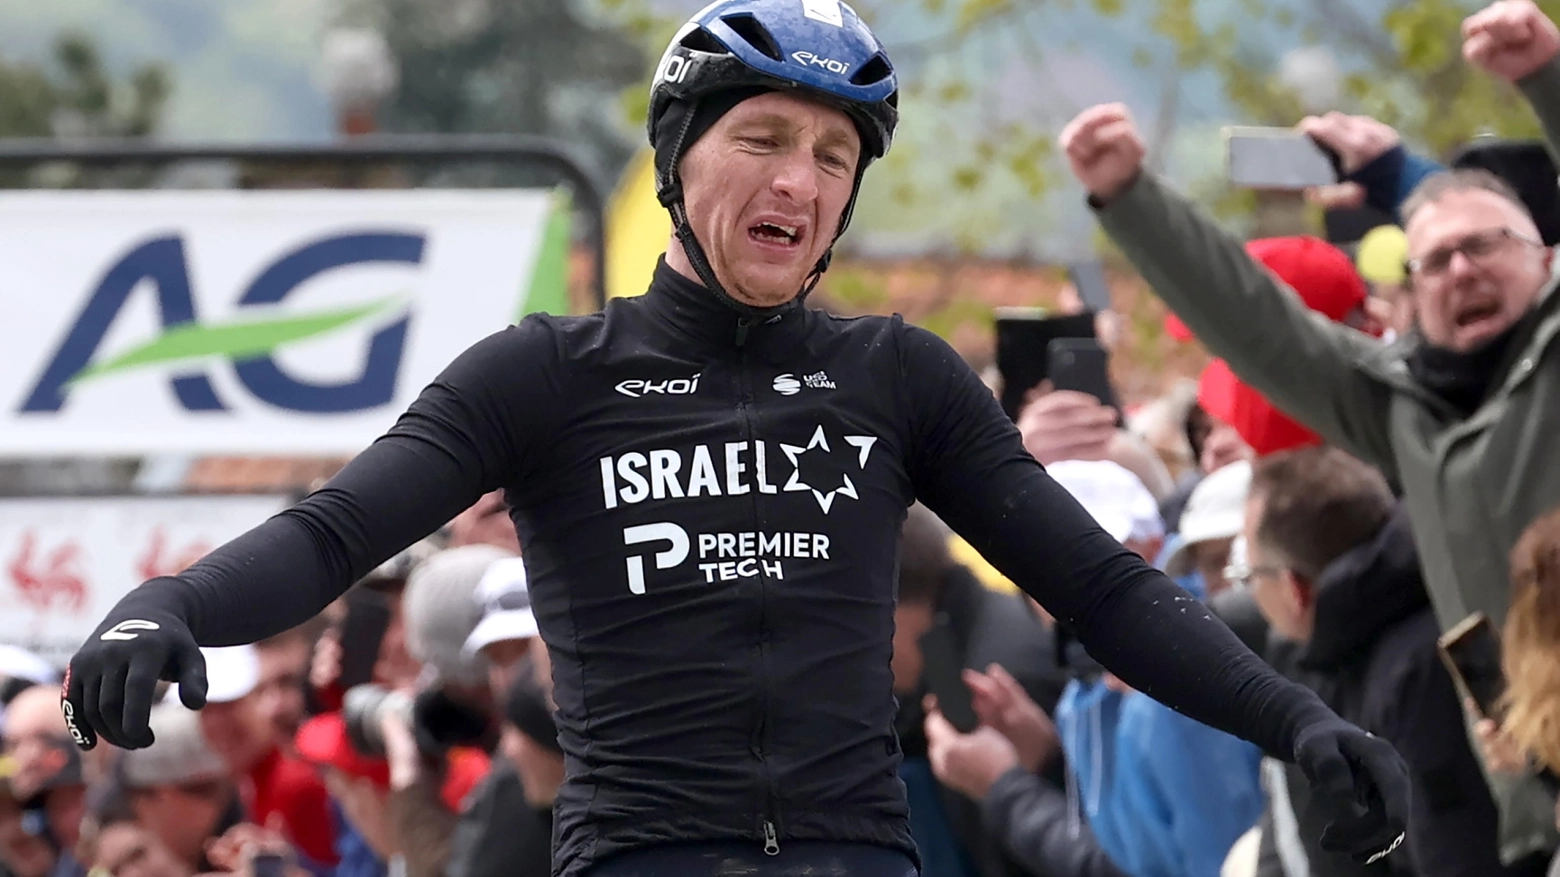 Dieci al ciclista dell’Israel Premier Teach, primo britannico ad entrare nell’albo d’oro e l’unico a scattare sul muro di Huy